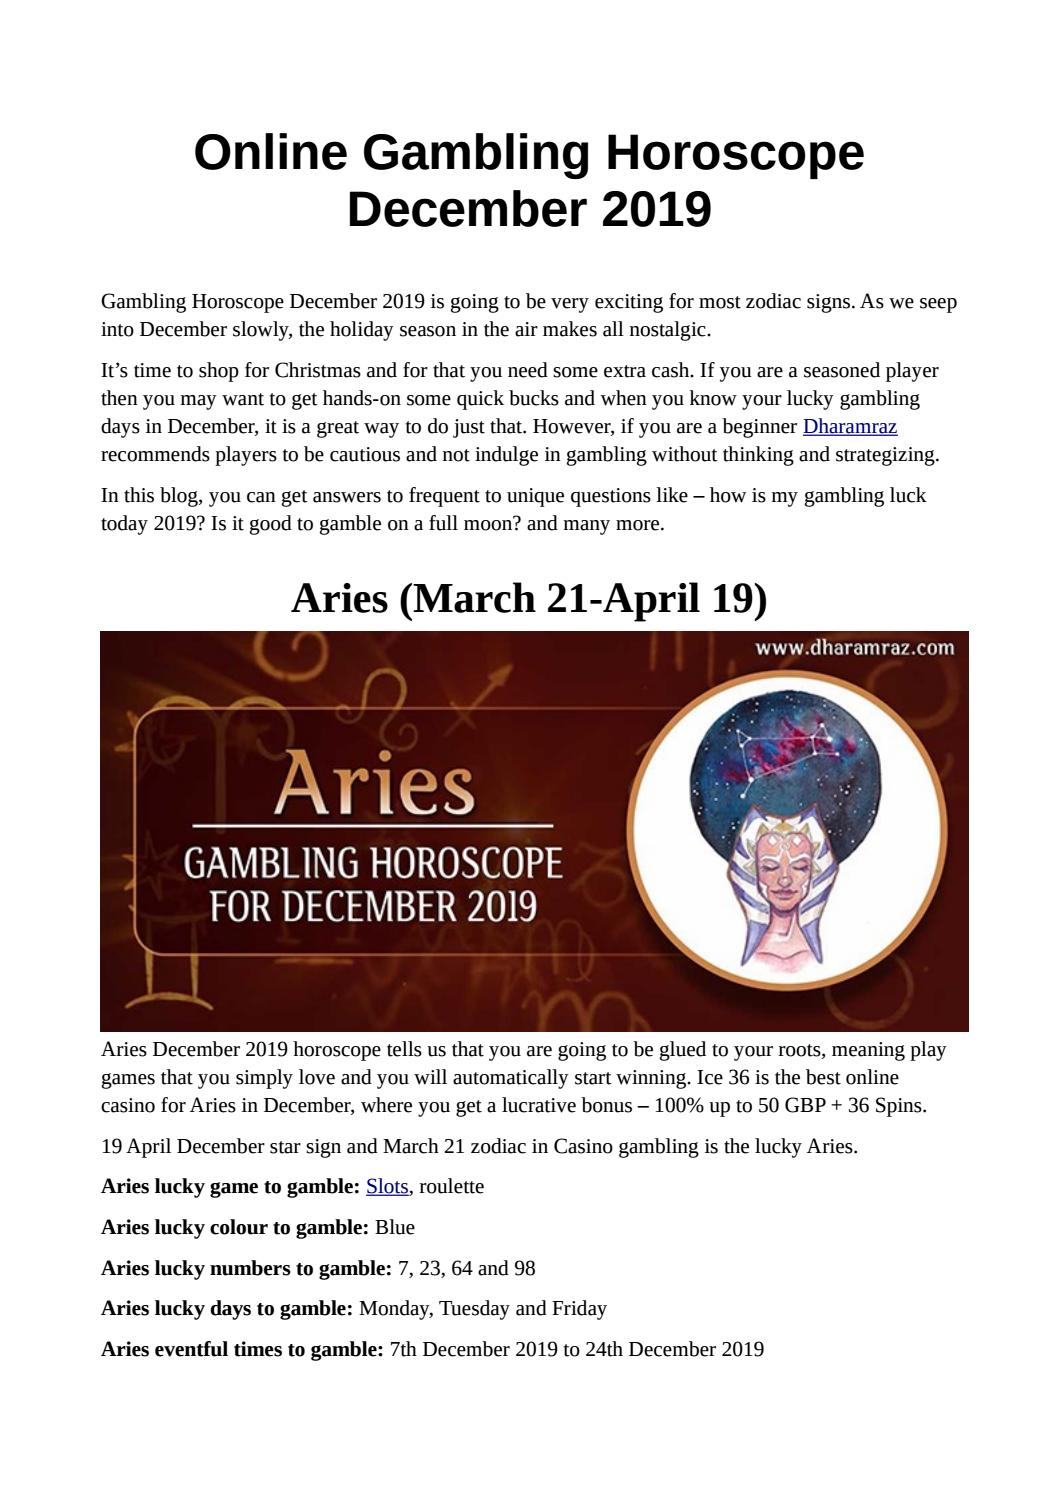 Gambling luck horoscope 2019